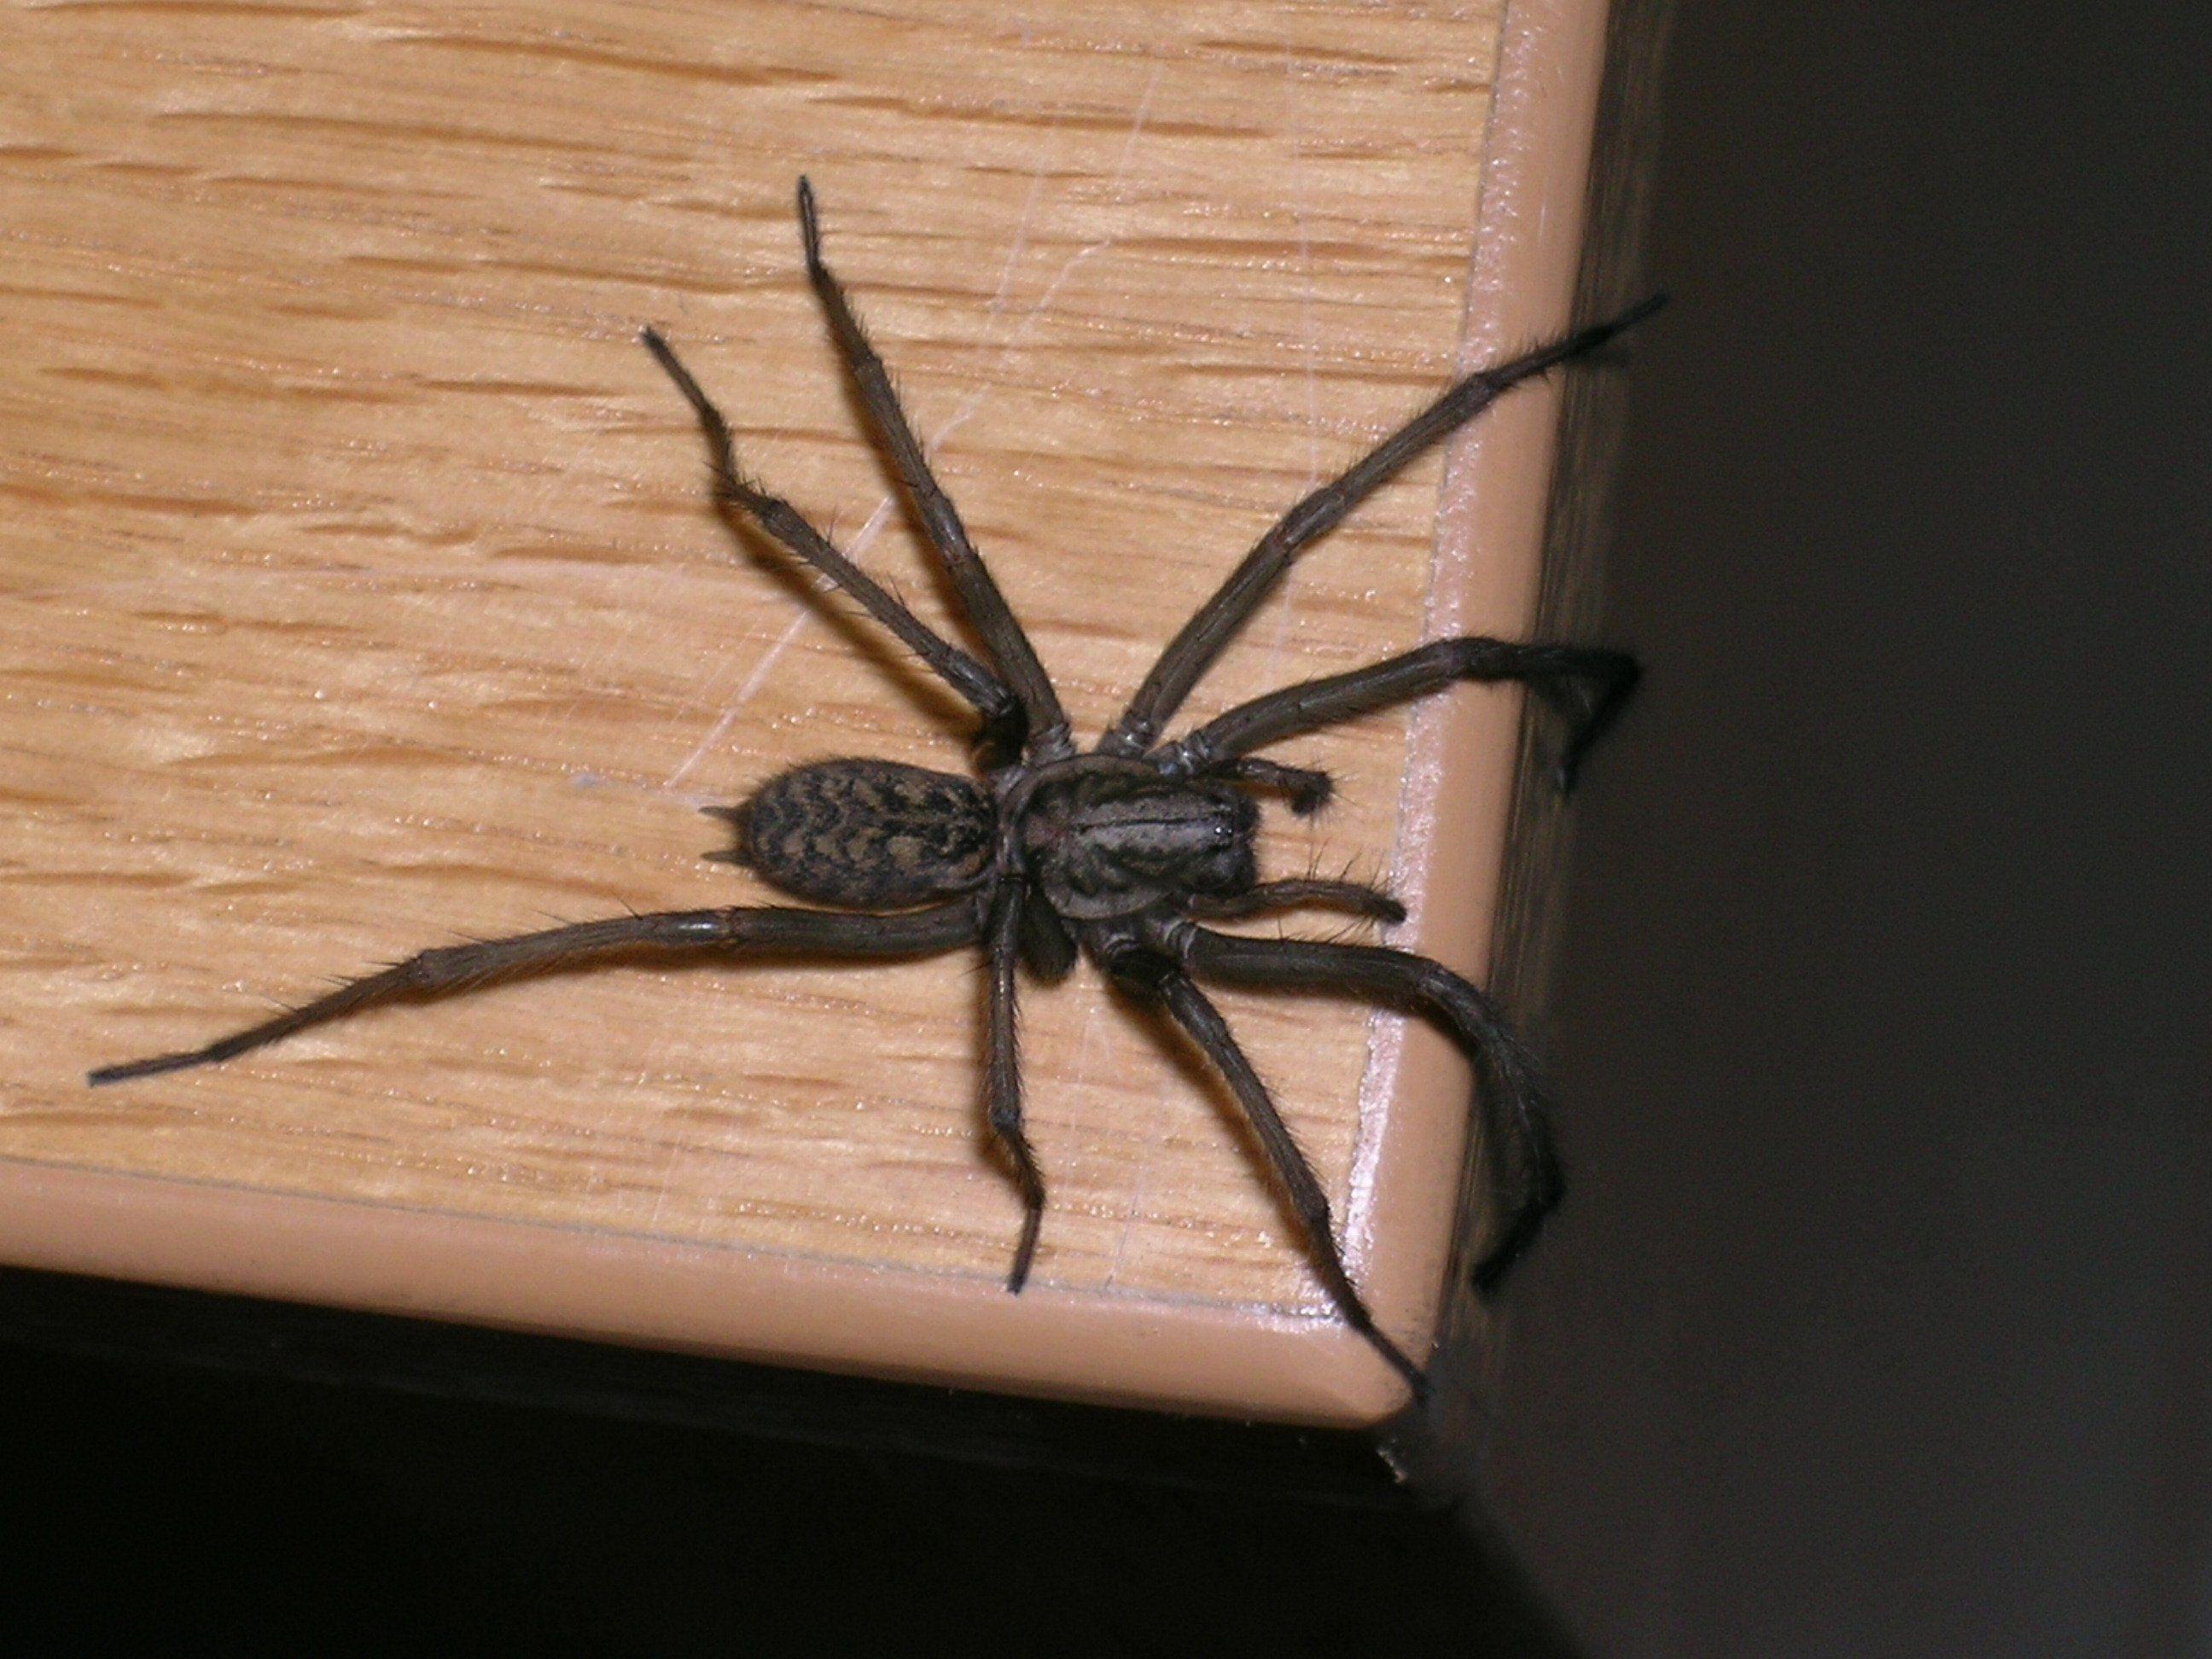 Spinnen lösen oft irrationale Ängste aus. Vor allem, wenn sie so ausschauen wie diese.